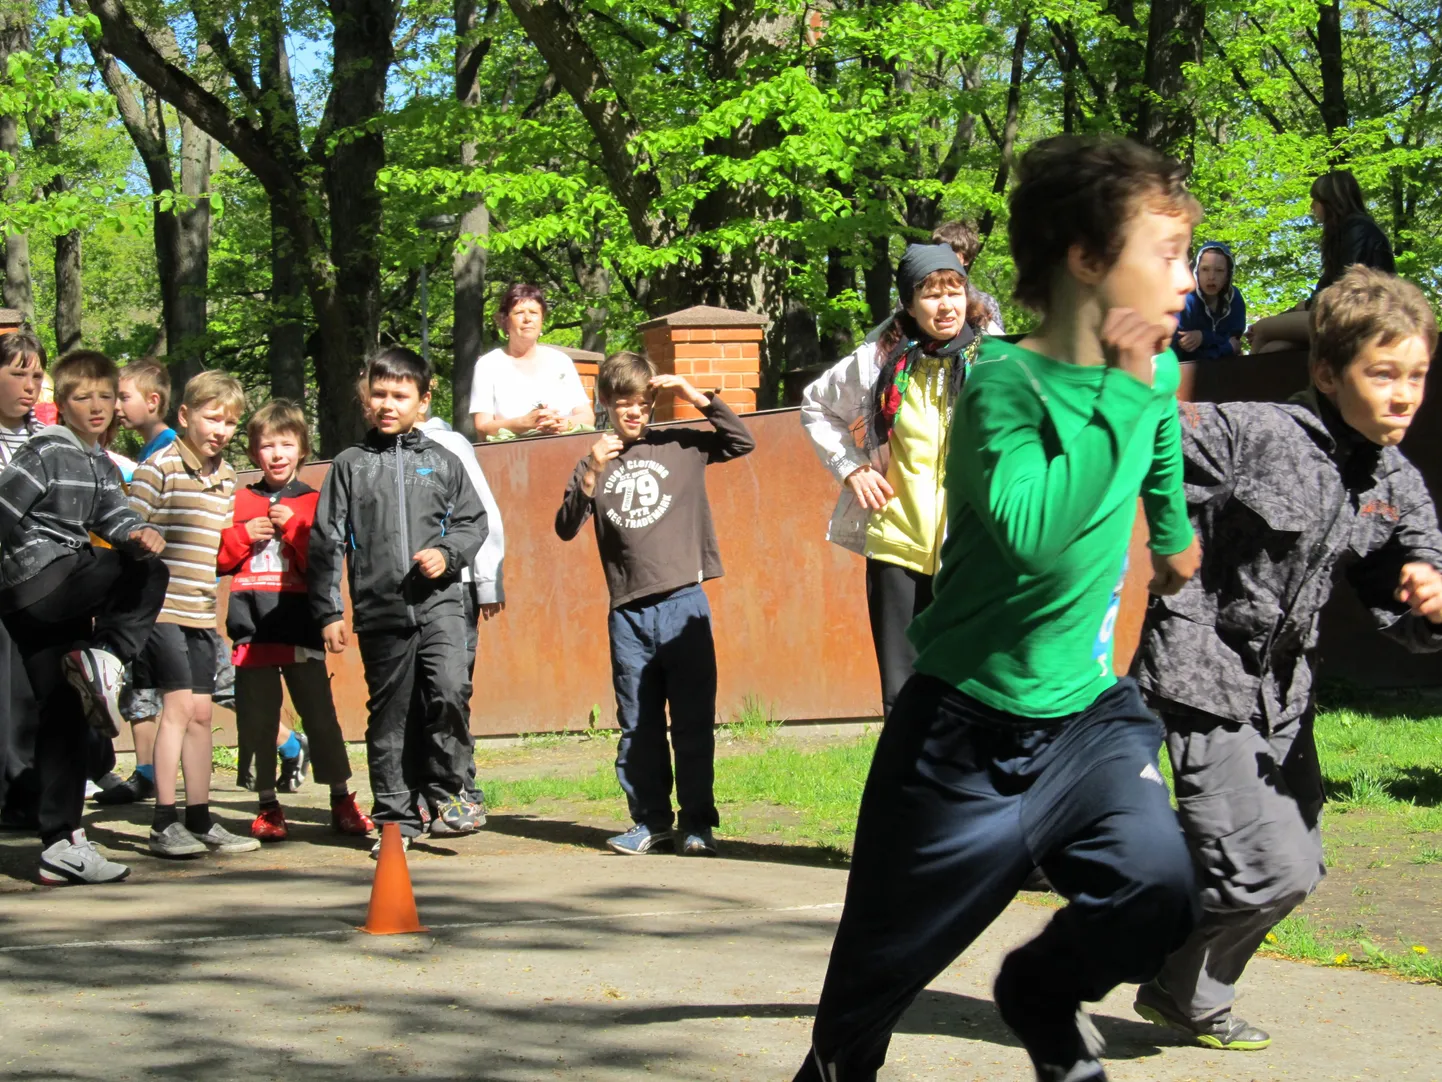 Hariduslike erivajadustega laste spordipäev Pärnus.